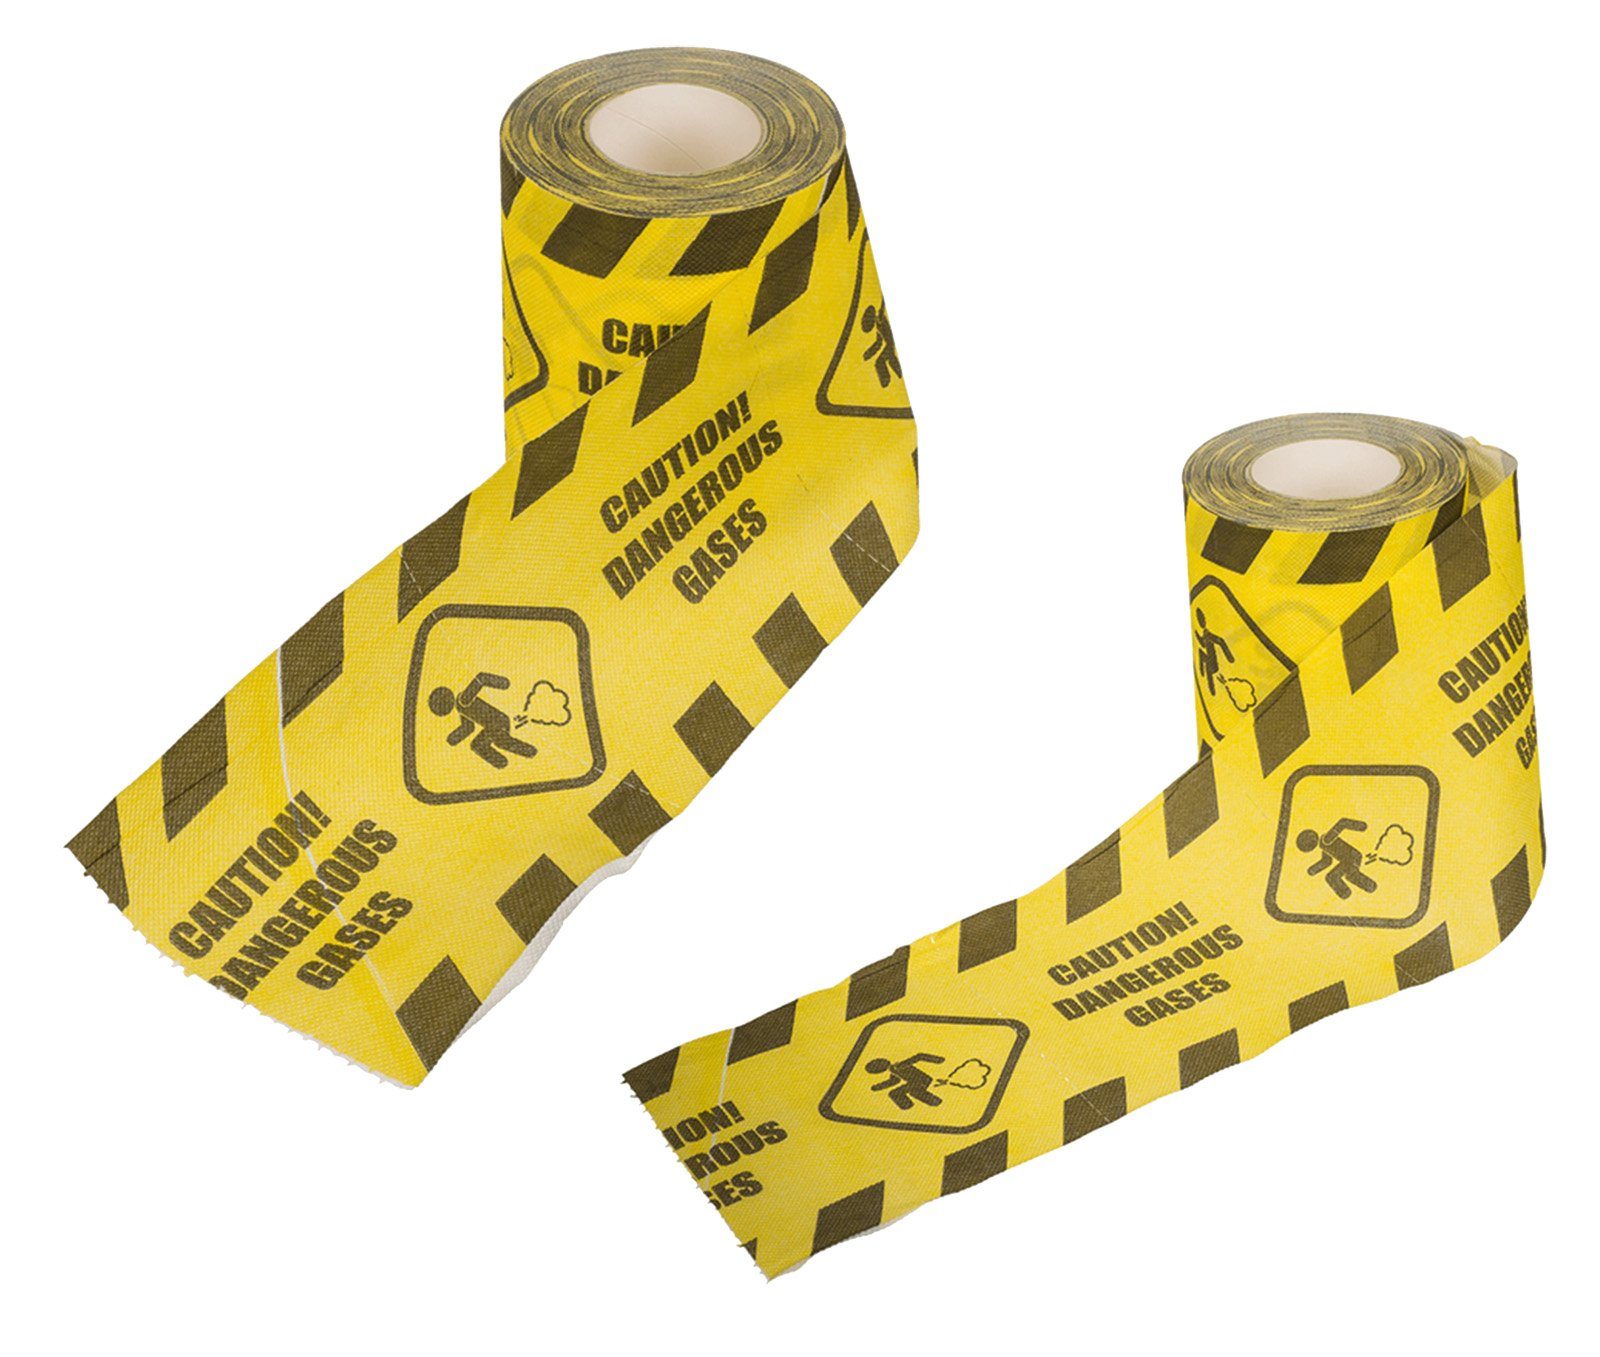 Out of the Blue Toilettenpapier 2 Dangerous Piktrogramm mit Gases Rollen Papierdekoration Furz Caution